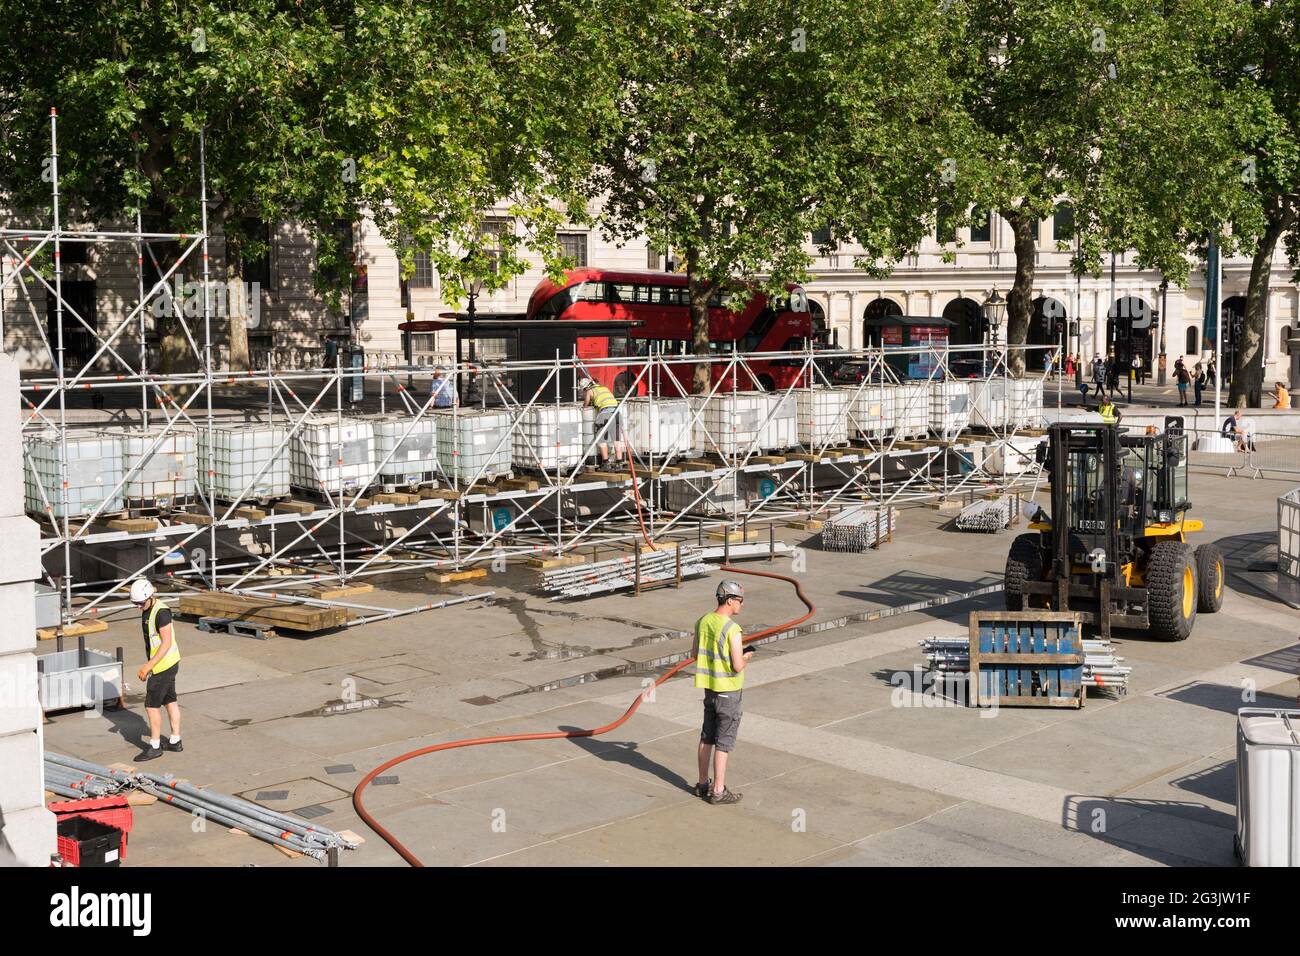 Les constructeurs construisent les clôtures autour de la place Trafalgar pour le festival de l'UEFA, saison des pieds EURO2020, Angleterre, Royaume-Uni Banque D'Images